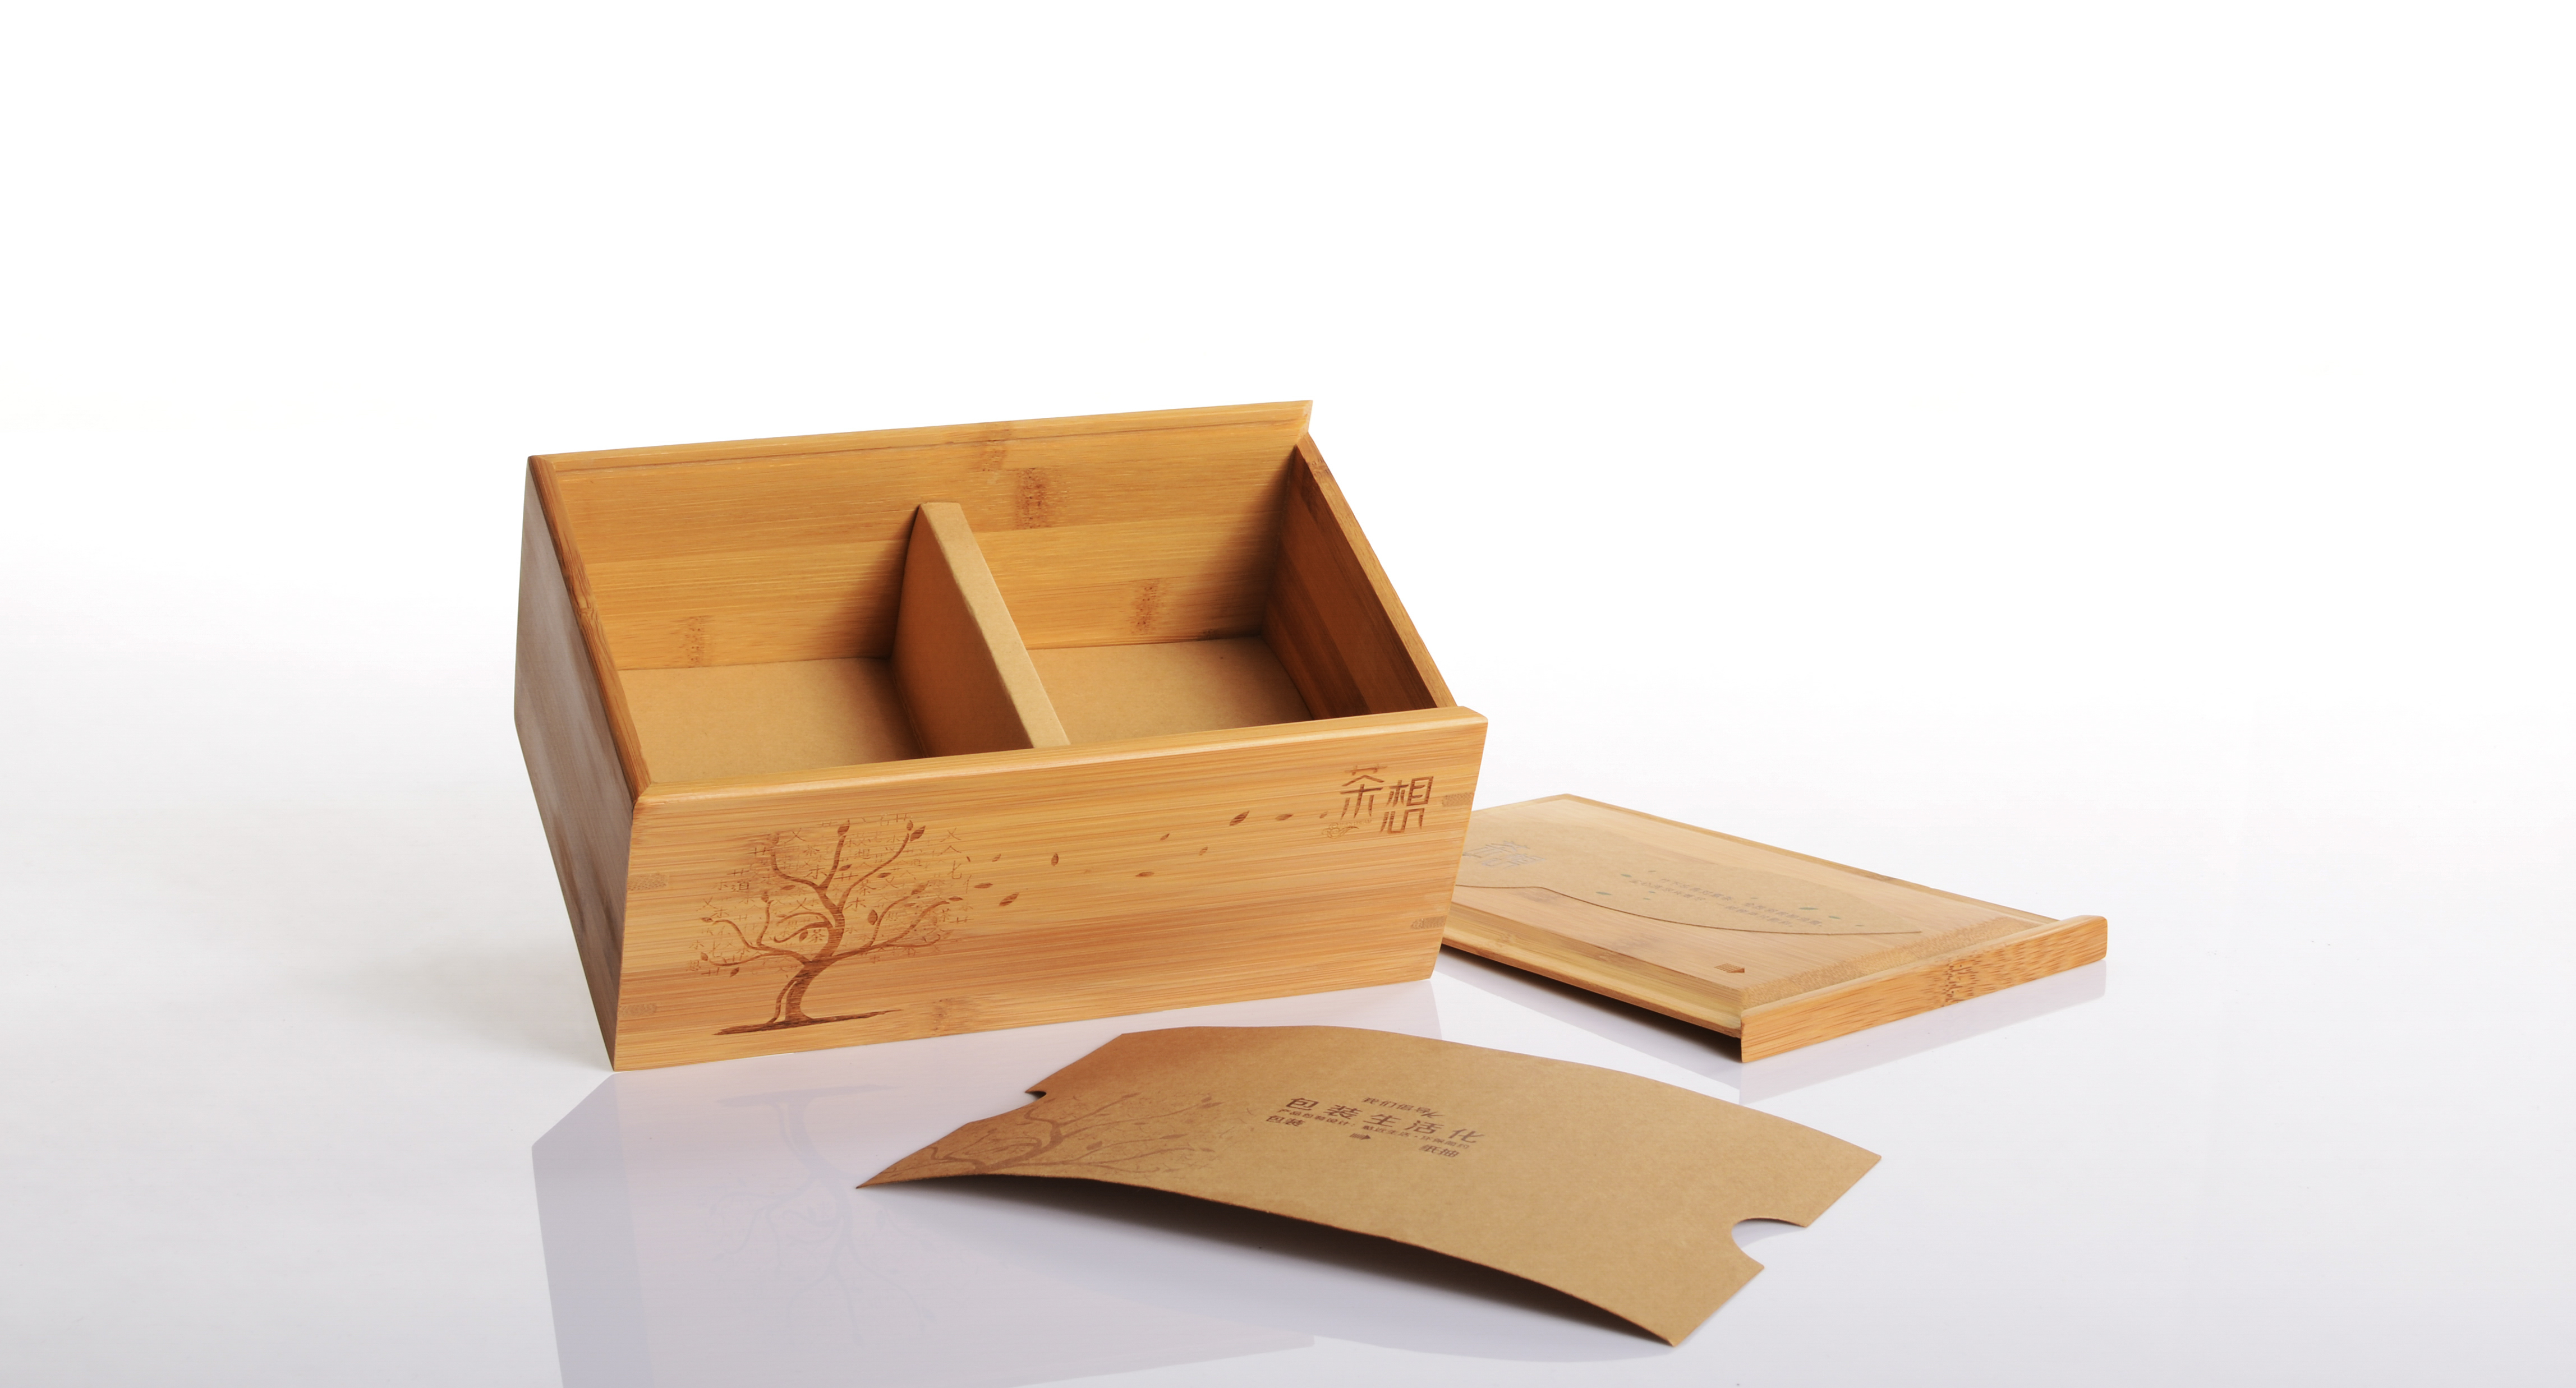 供应茶想A竹盒热销创意竹盒抽纸盒礼品盒长方形竹纸茶叶包装环保竹盒可雕刻logo图片